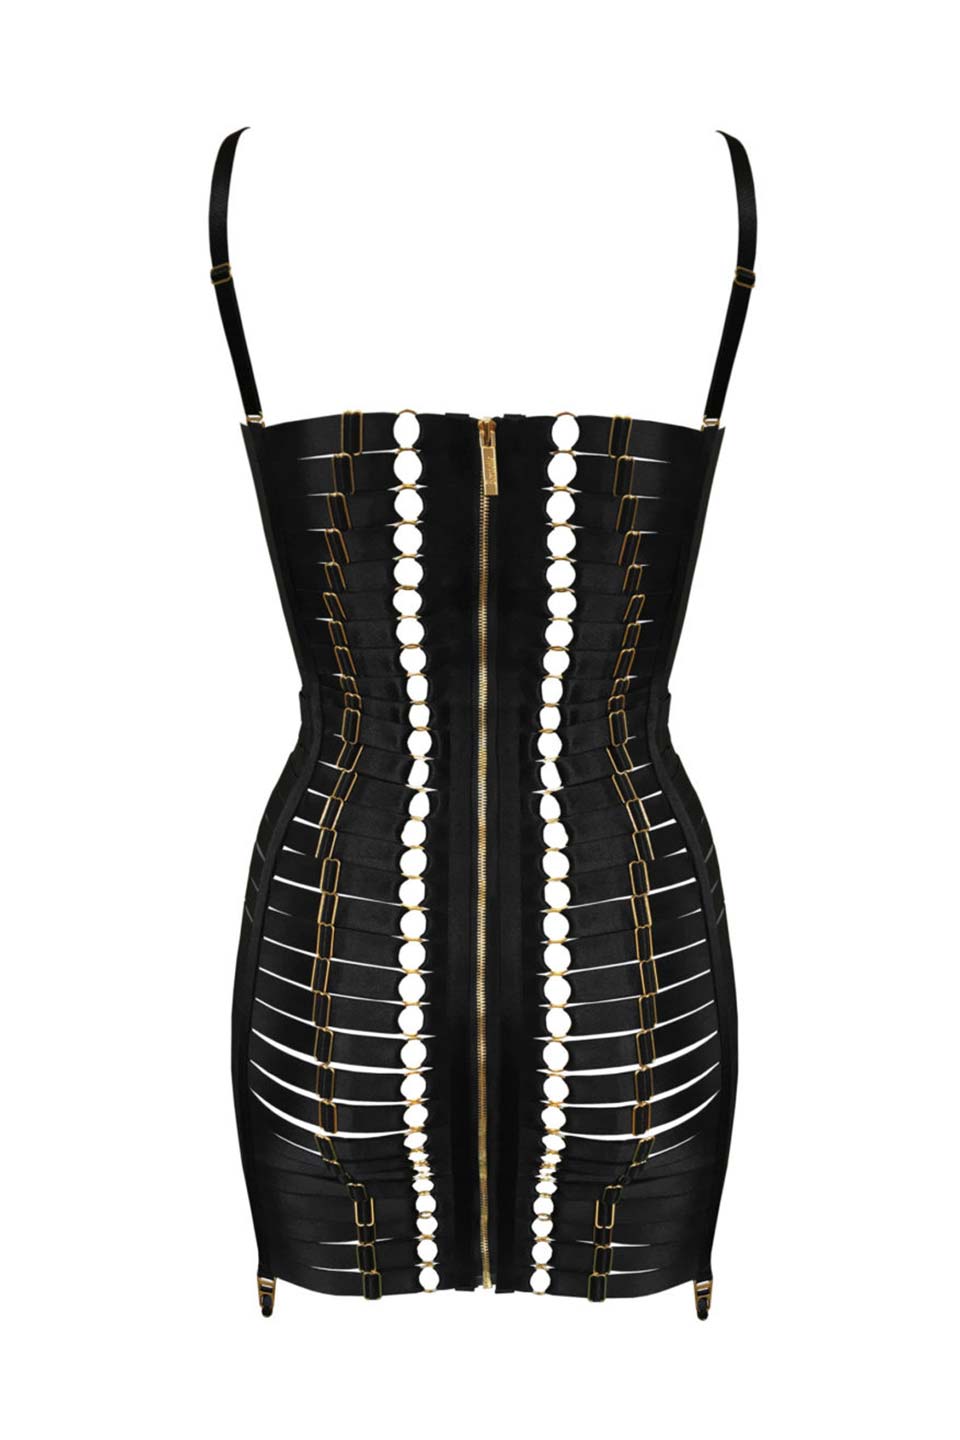 Thumbnail for Product gallery 2, Atelier Bordelle luxury lingerie, black mini dress from designer